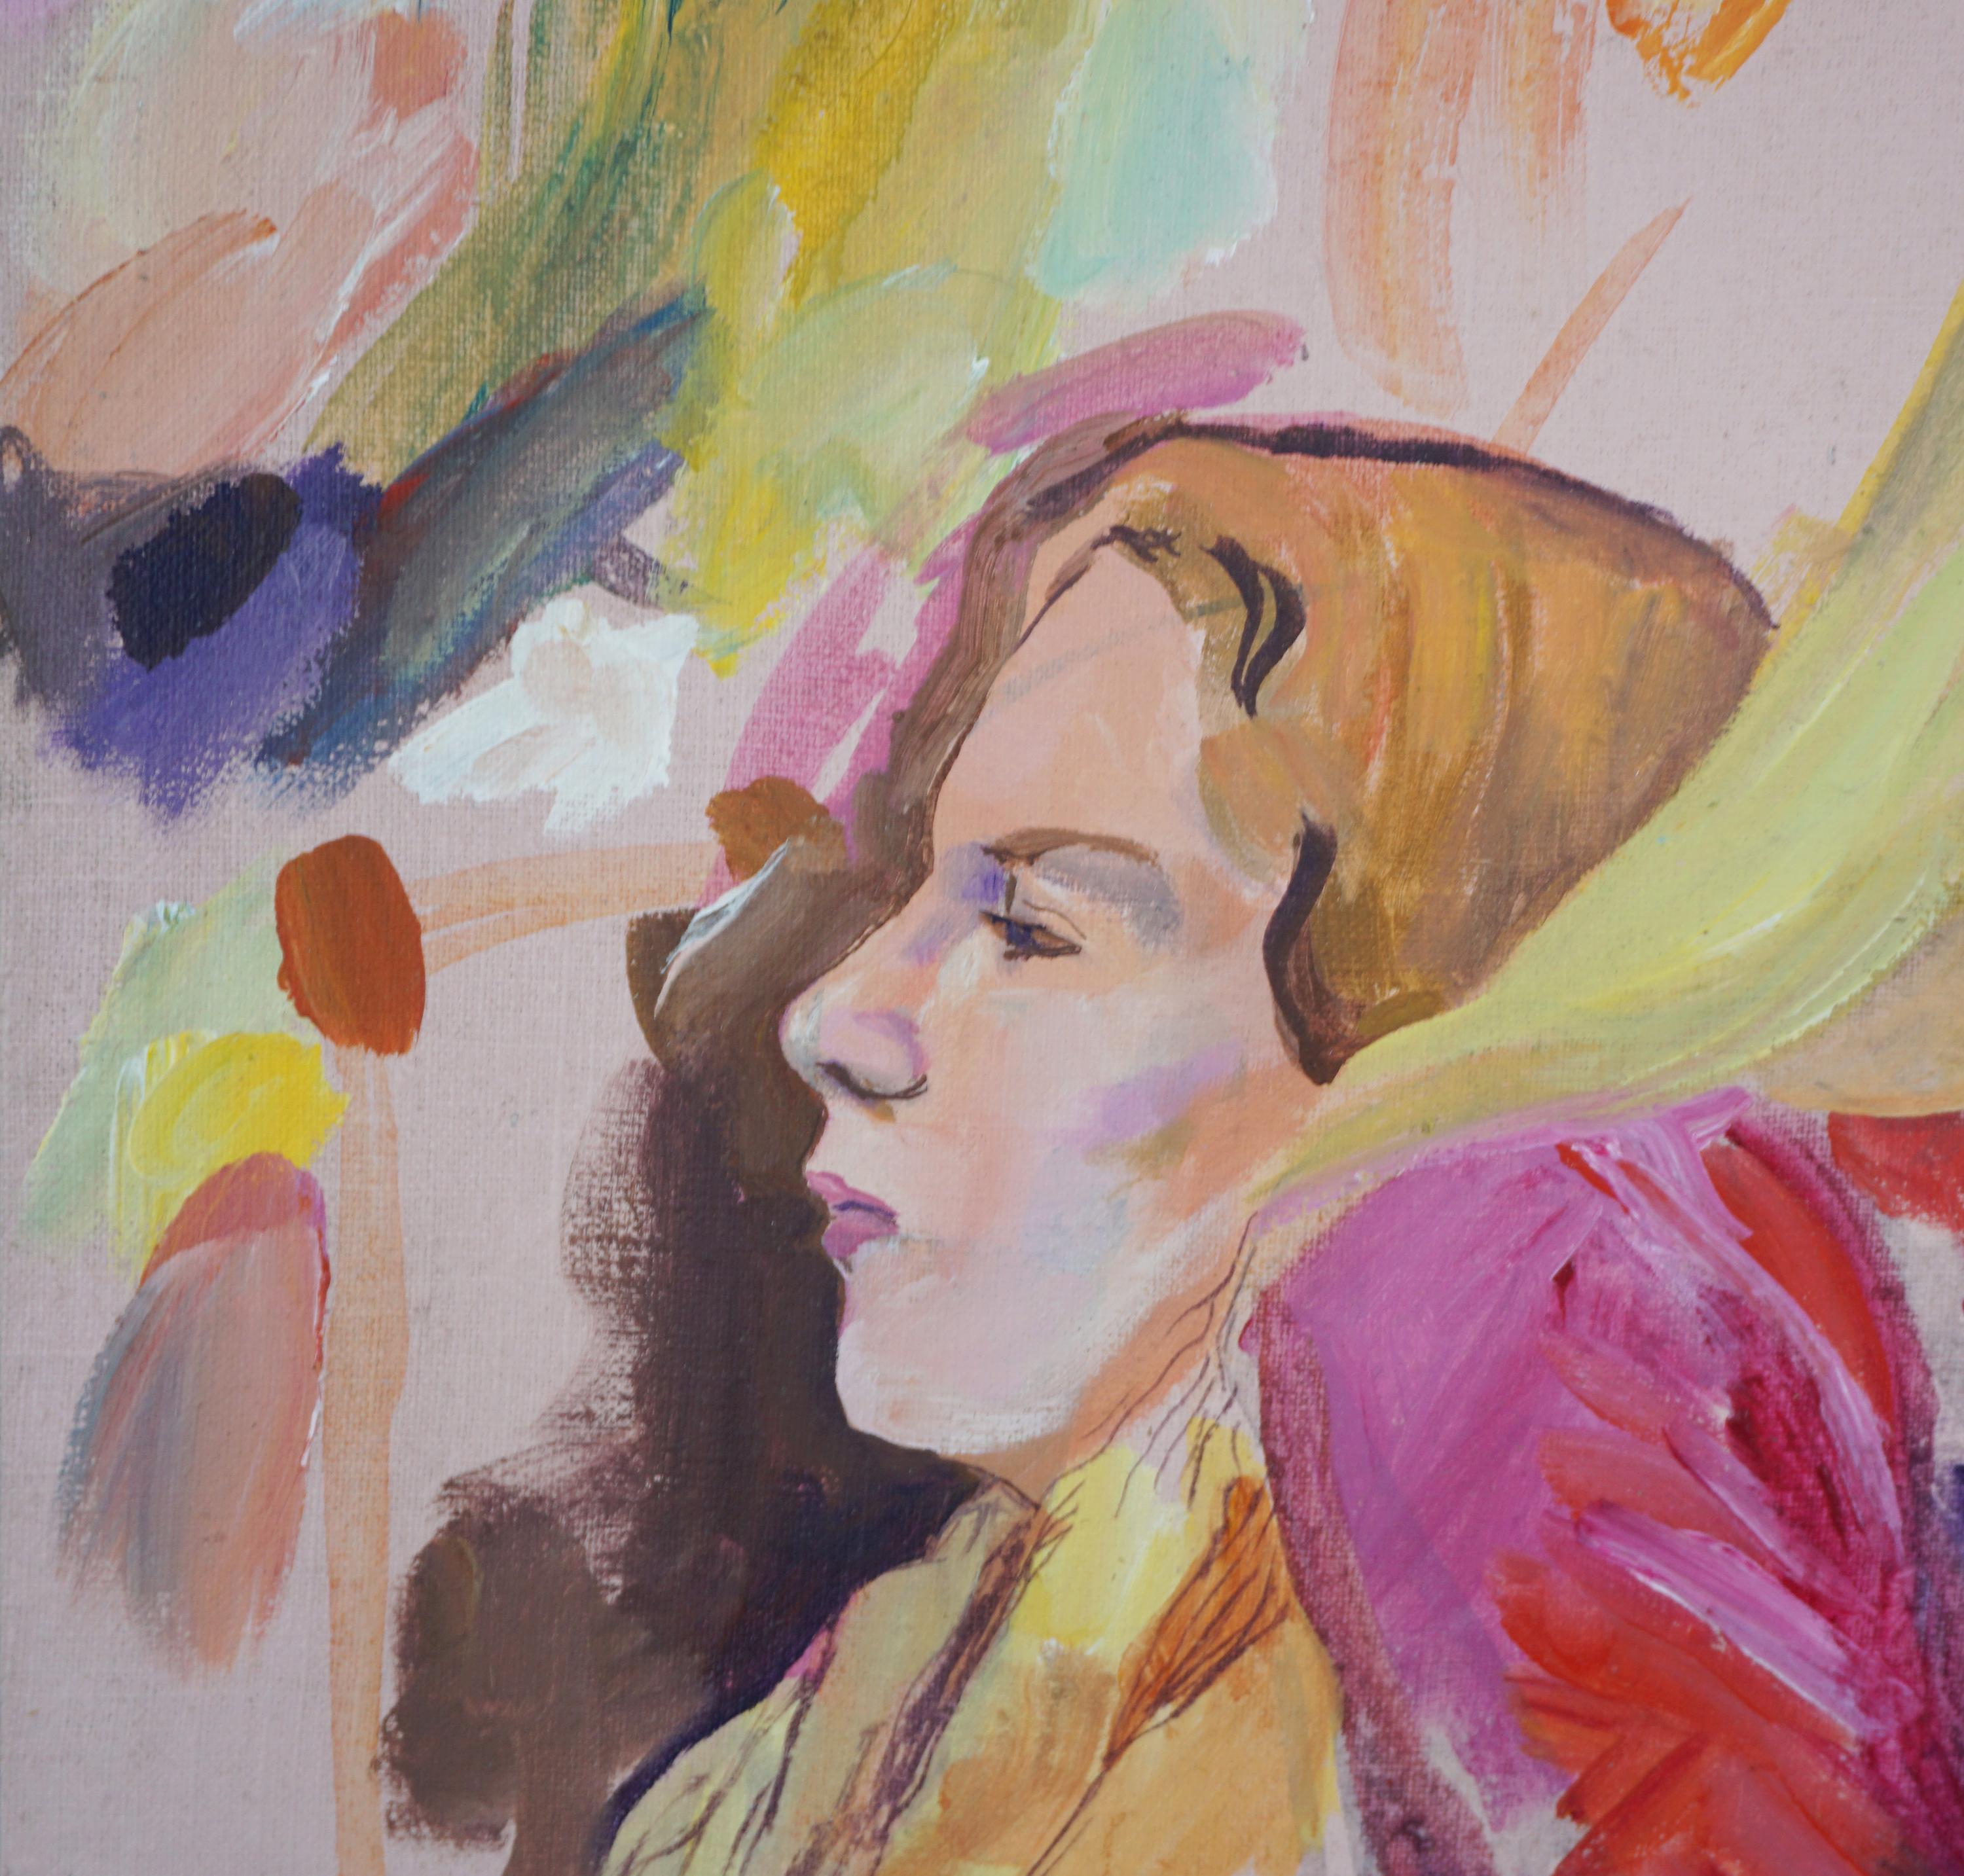 Étude figurative moderne de trois femmes à l'huile sur toile - Painting de Patricia Gren Hayes